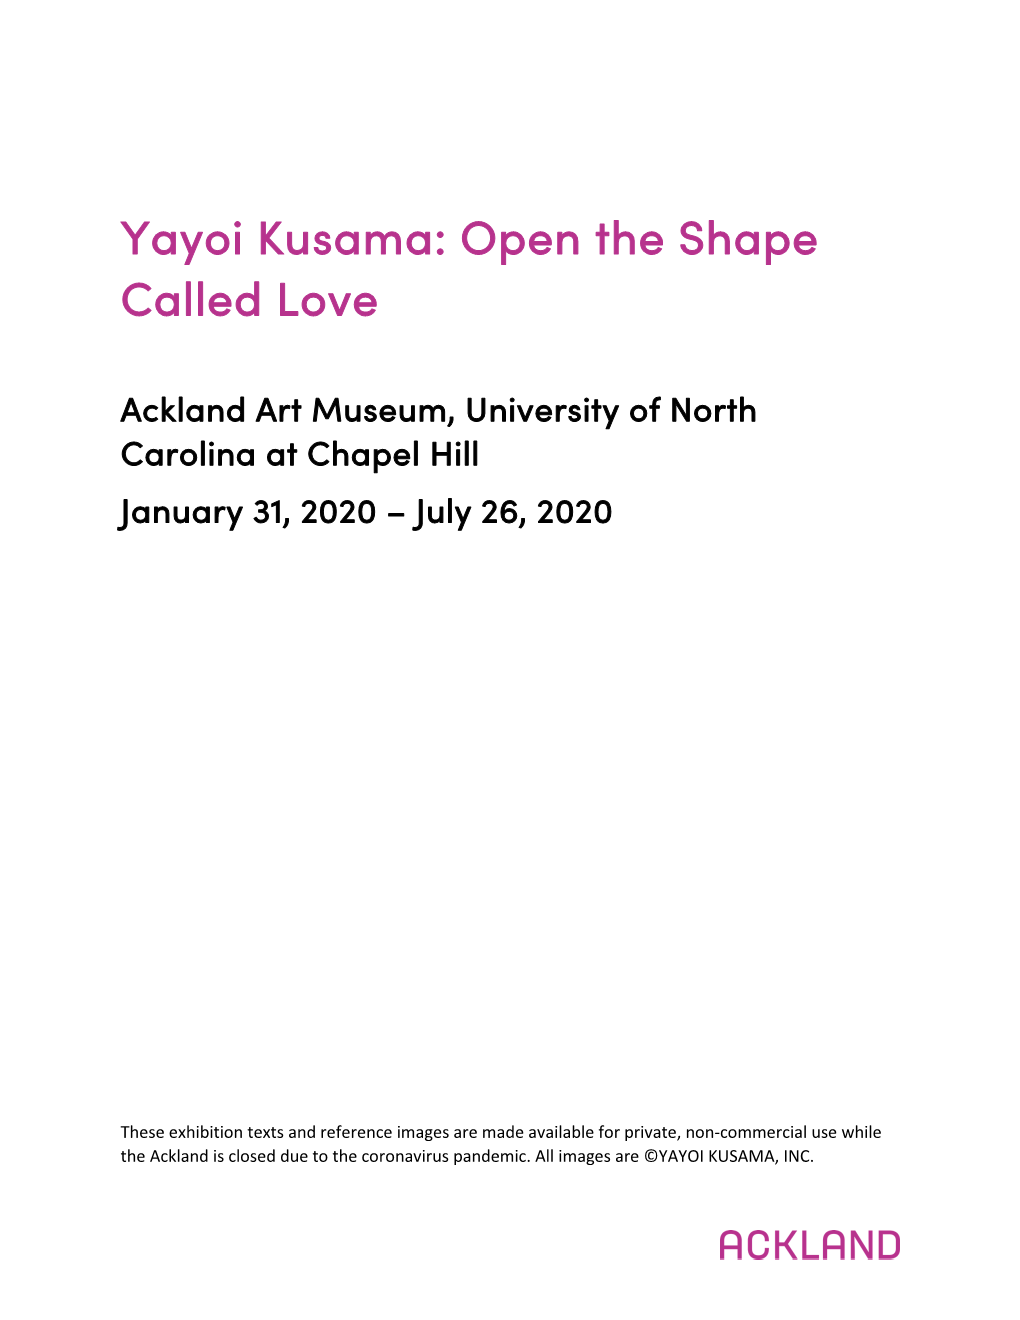 Yayoi Kusama: Open the Shape Called Love